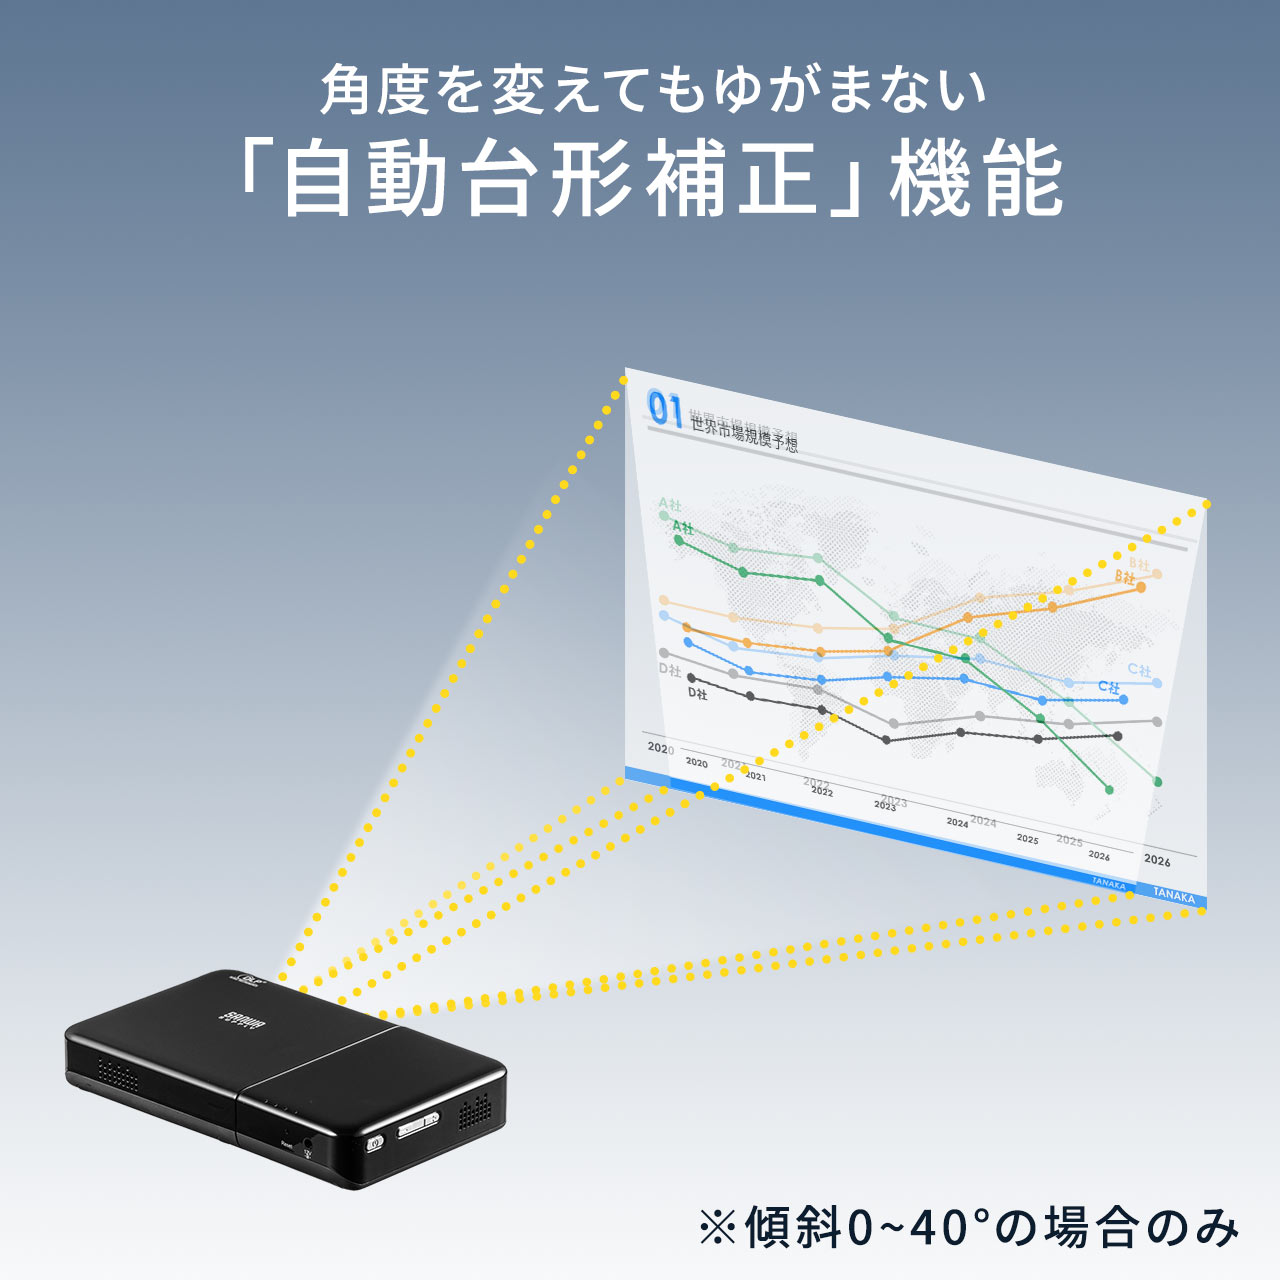 【シークレットセール】モバイルプロジェクター 200ANSIルーメン HDMI 充電用USB Aポート 天井投影可能 台形補正機能 バッテリー スピーカー内蔵 選挙グッズ 400-PRJ026